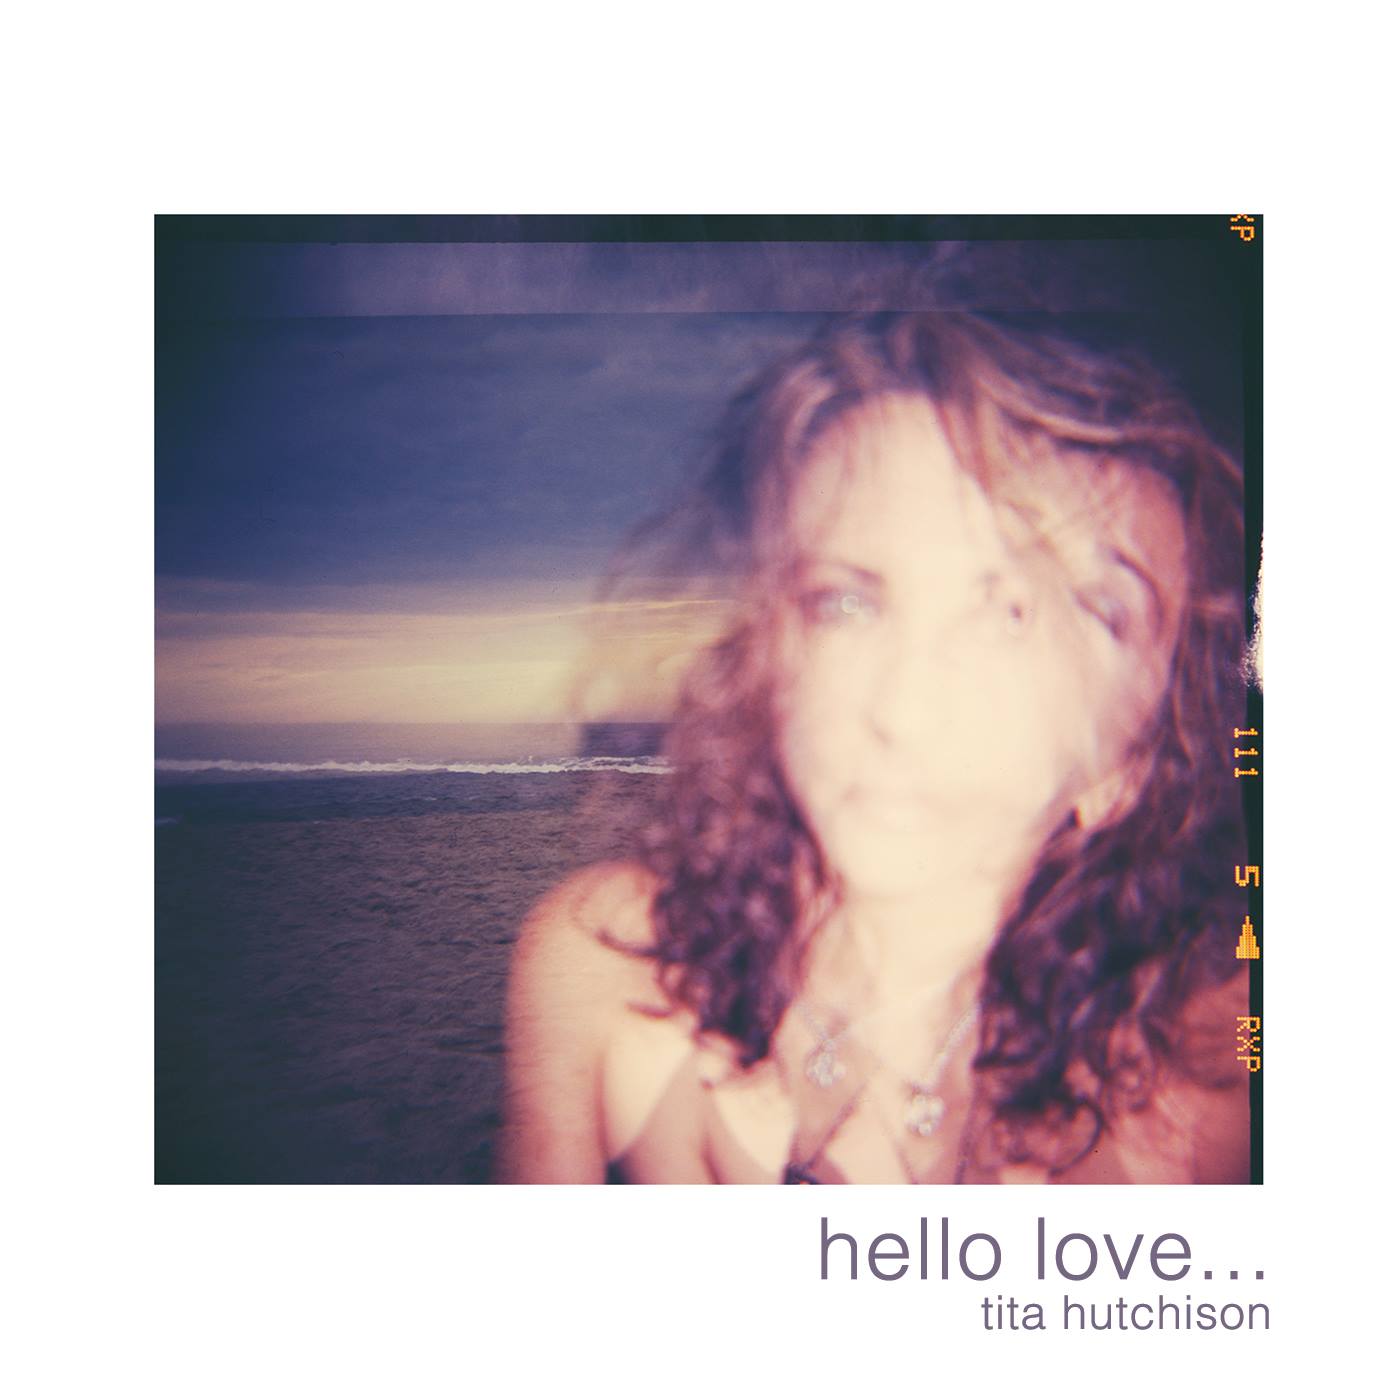 Tita Hutchison Releases “Hello Love”